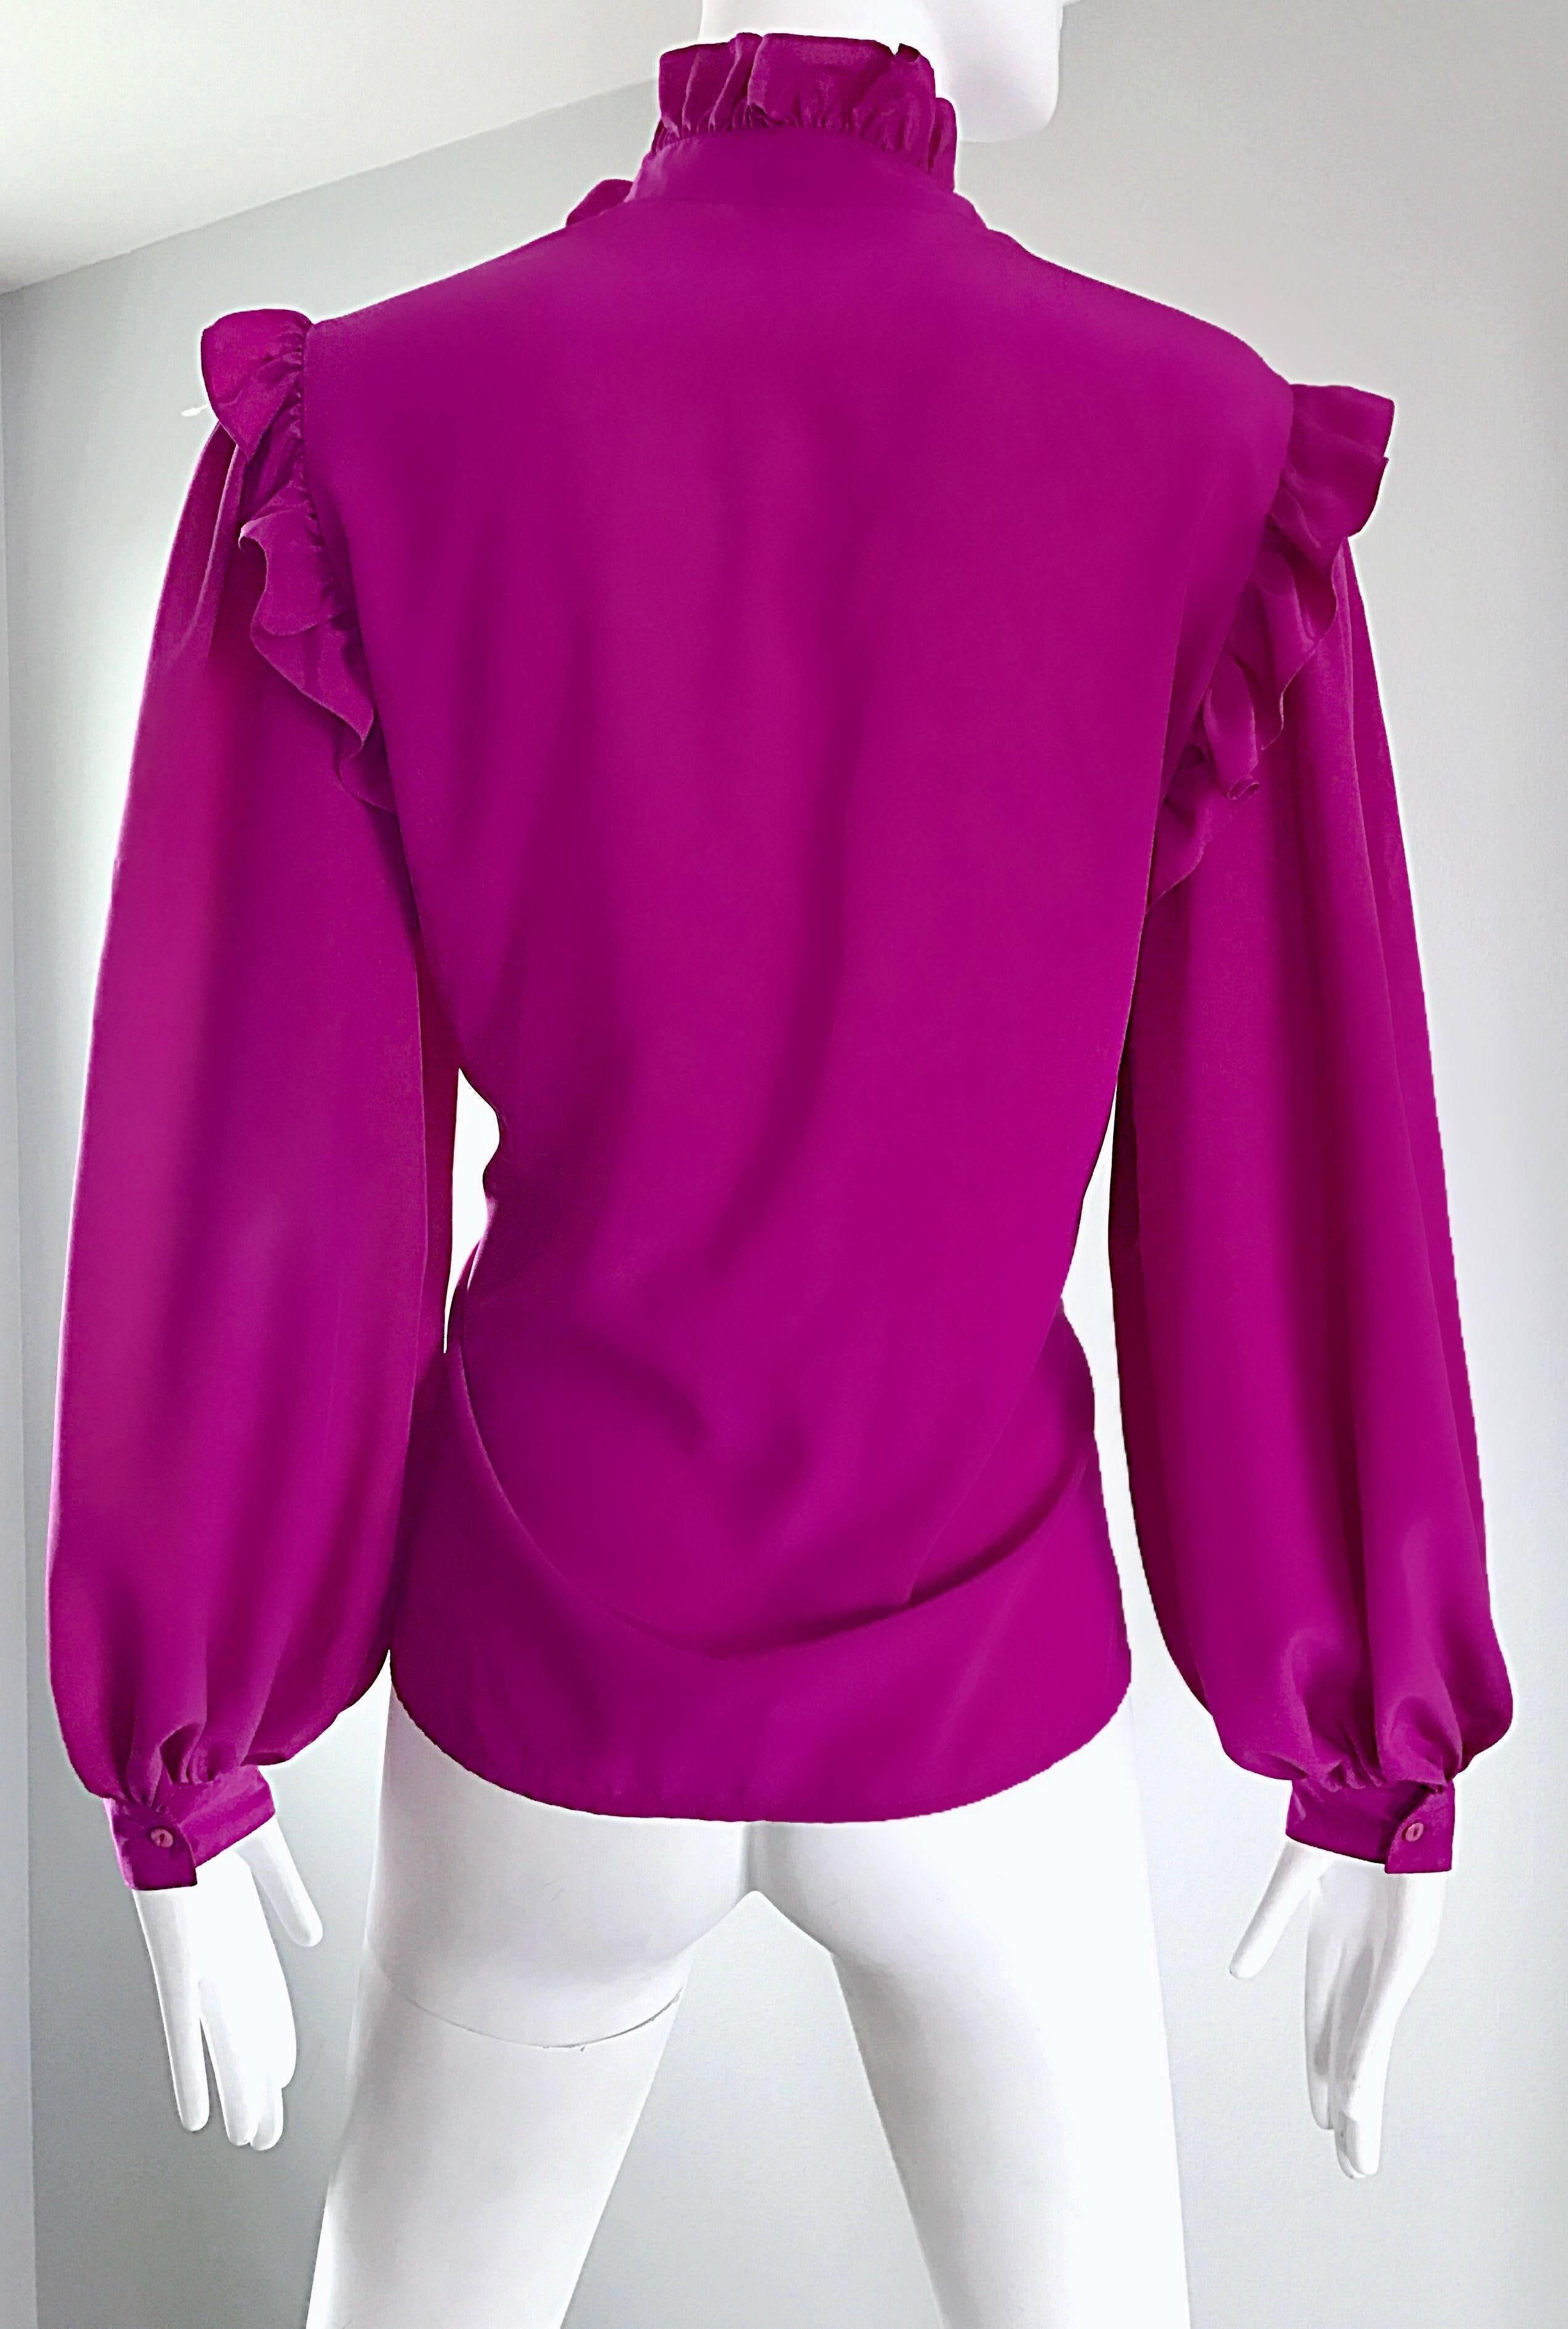 Oscar de la Renta 1970s Magenta Fuchsia Pink Silk Bishop Sleeve Vintage Blouse 1